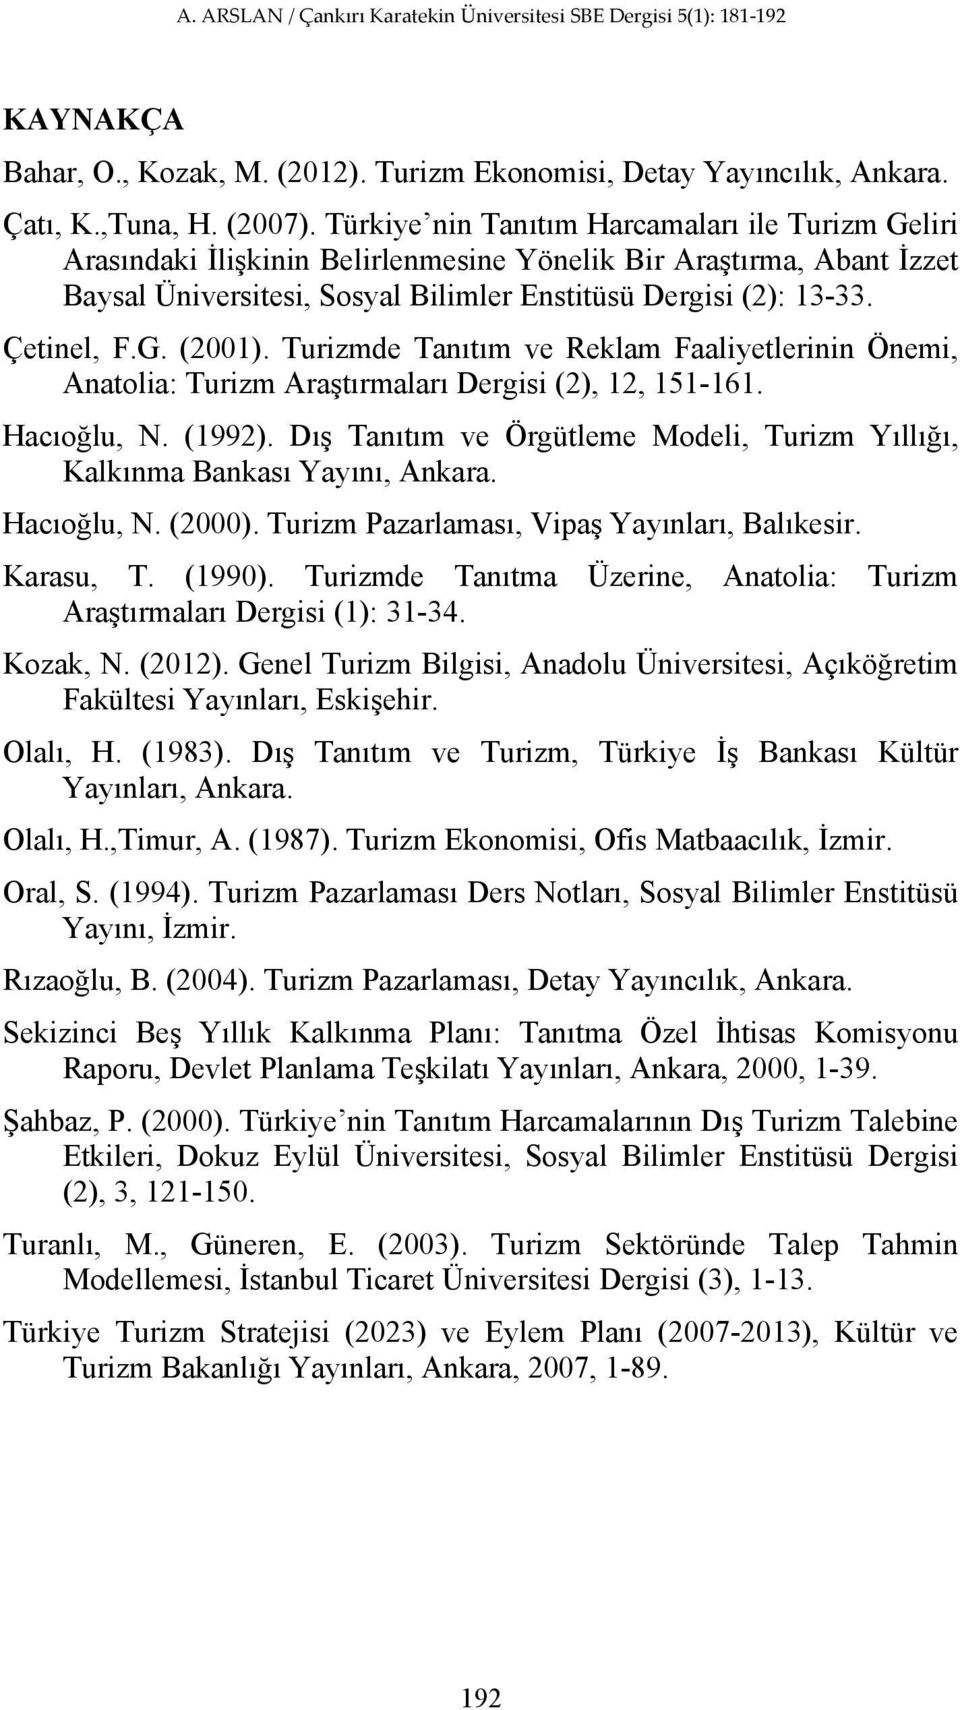 G. (2001). Turizmde Tanıtım ve Reklam Faaliyetlerinin Önemi, Anatolia: Turizm Araştırmaları Dergisi (2), 12, 151-161. Hacıoğlu, N. (1992).